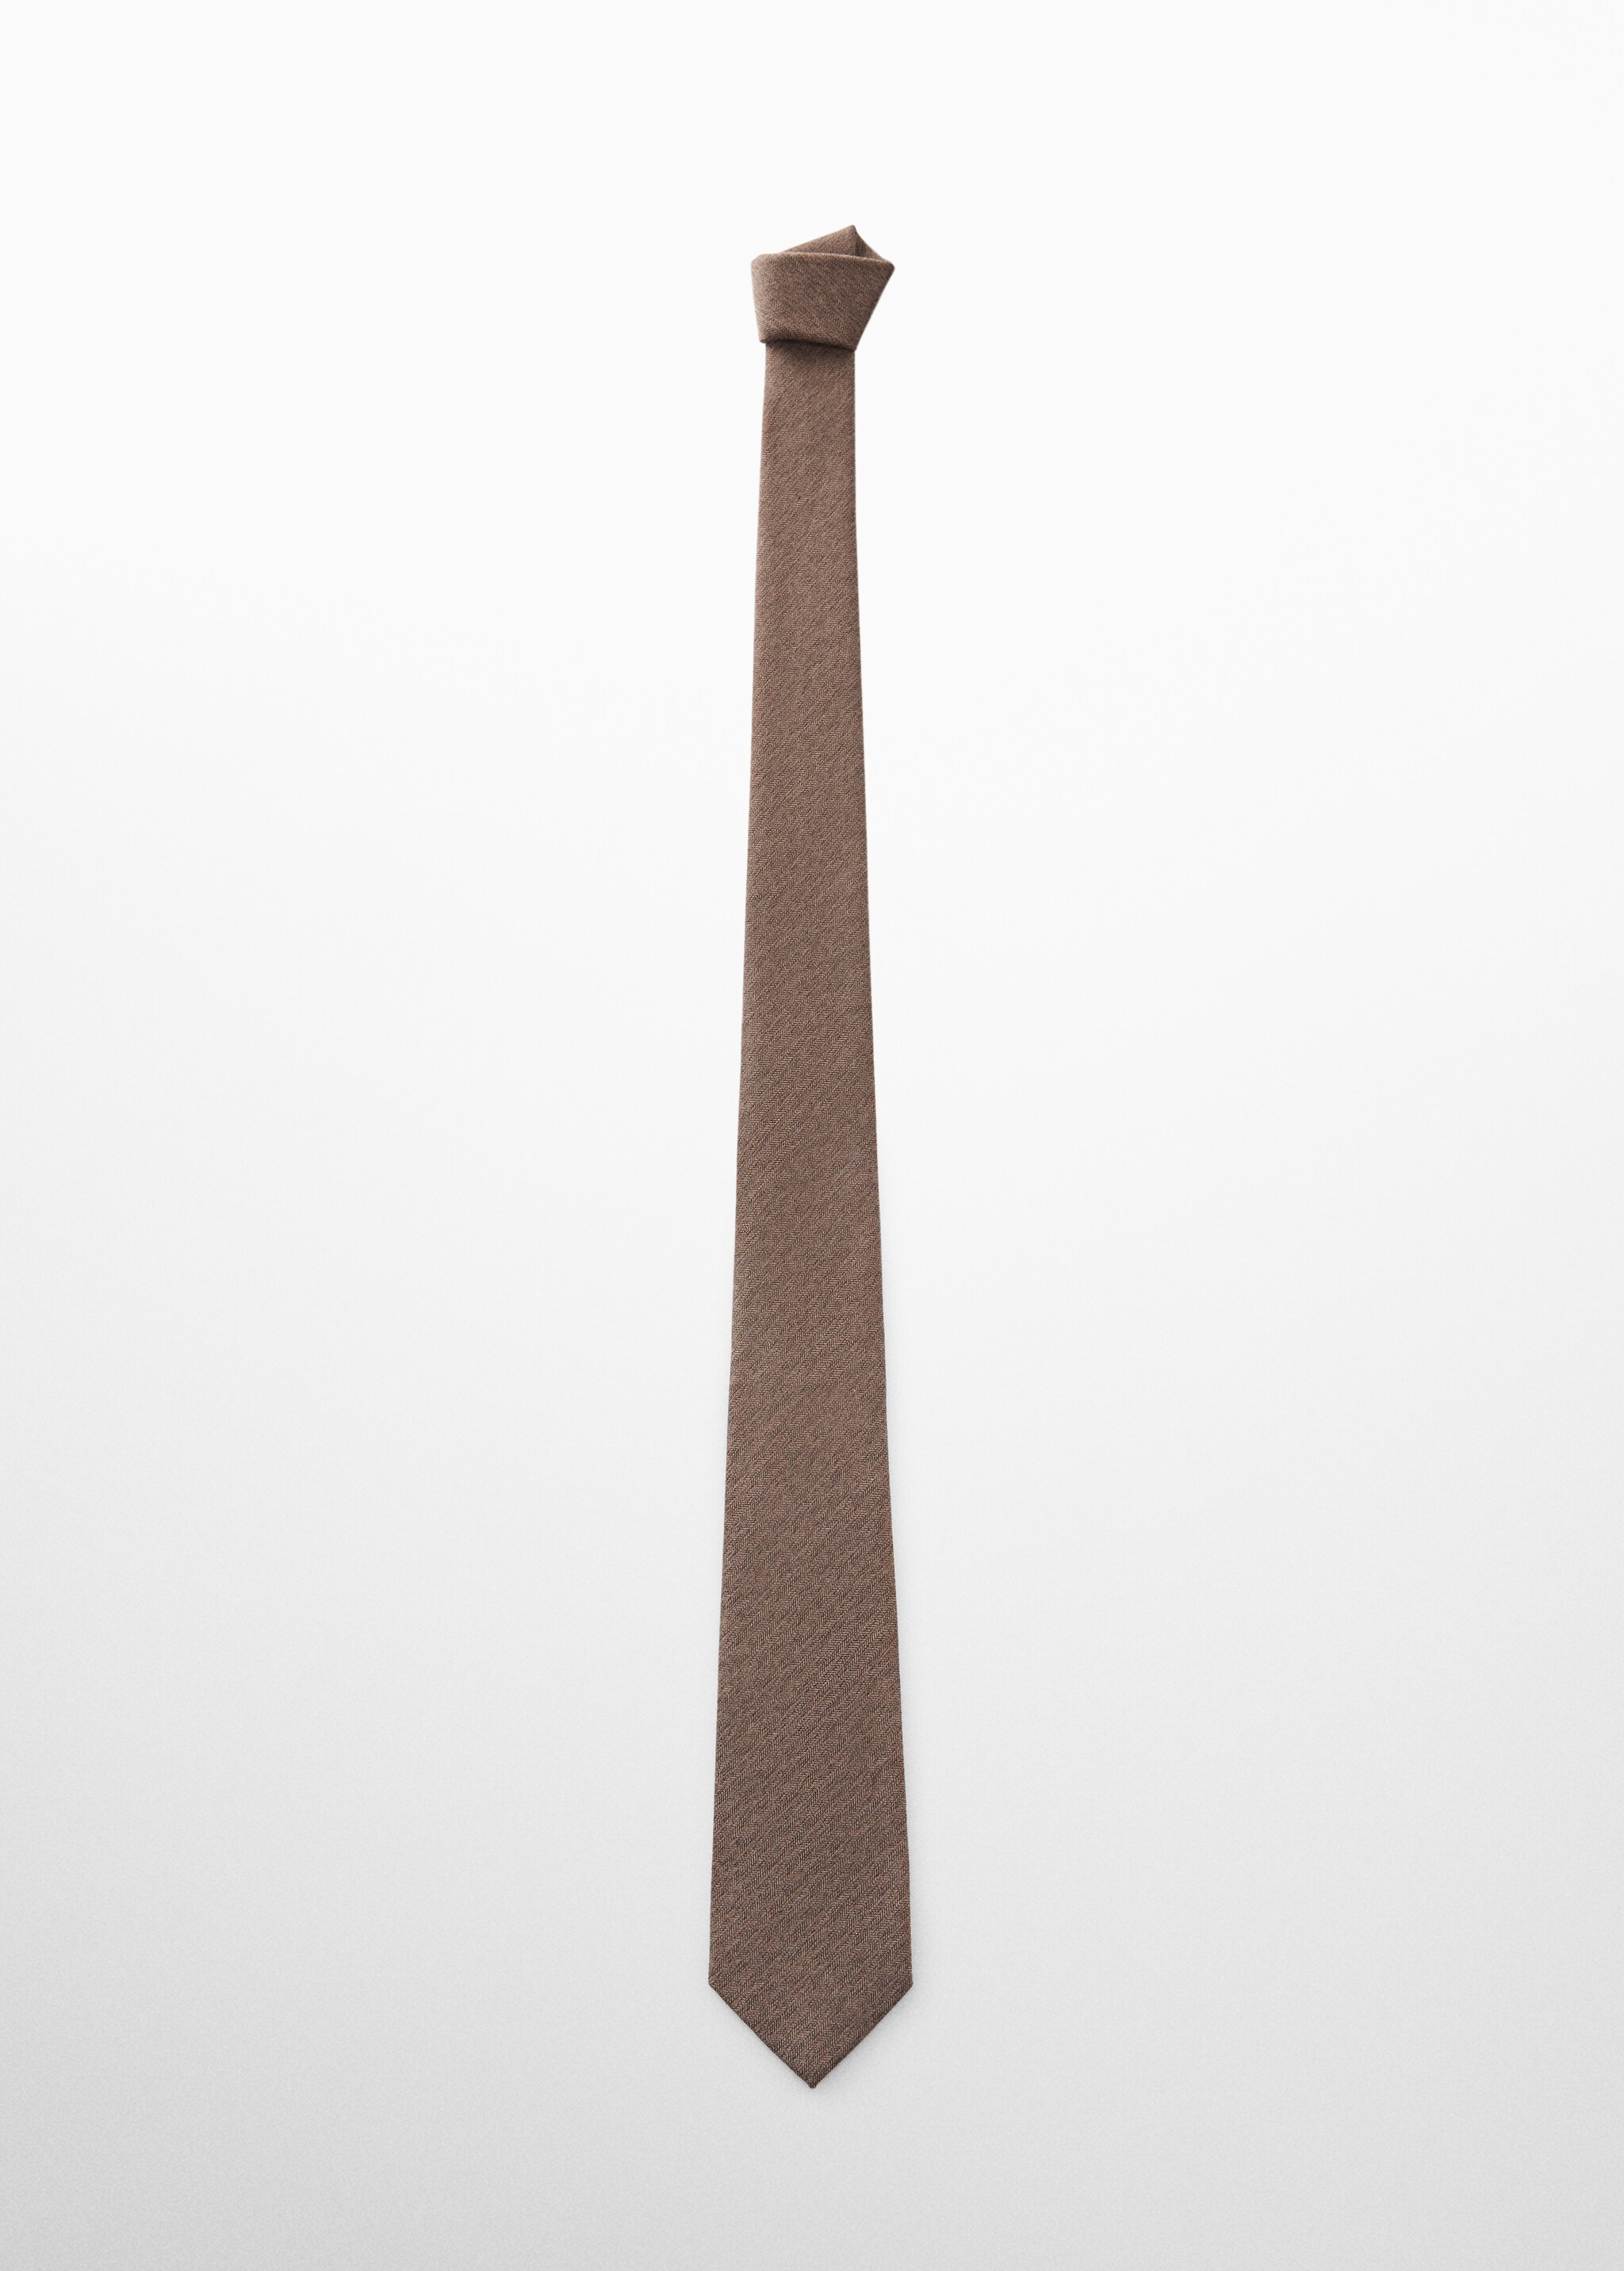 Cravatta seta di gelso spigata - Articolo senza modello